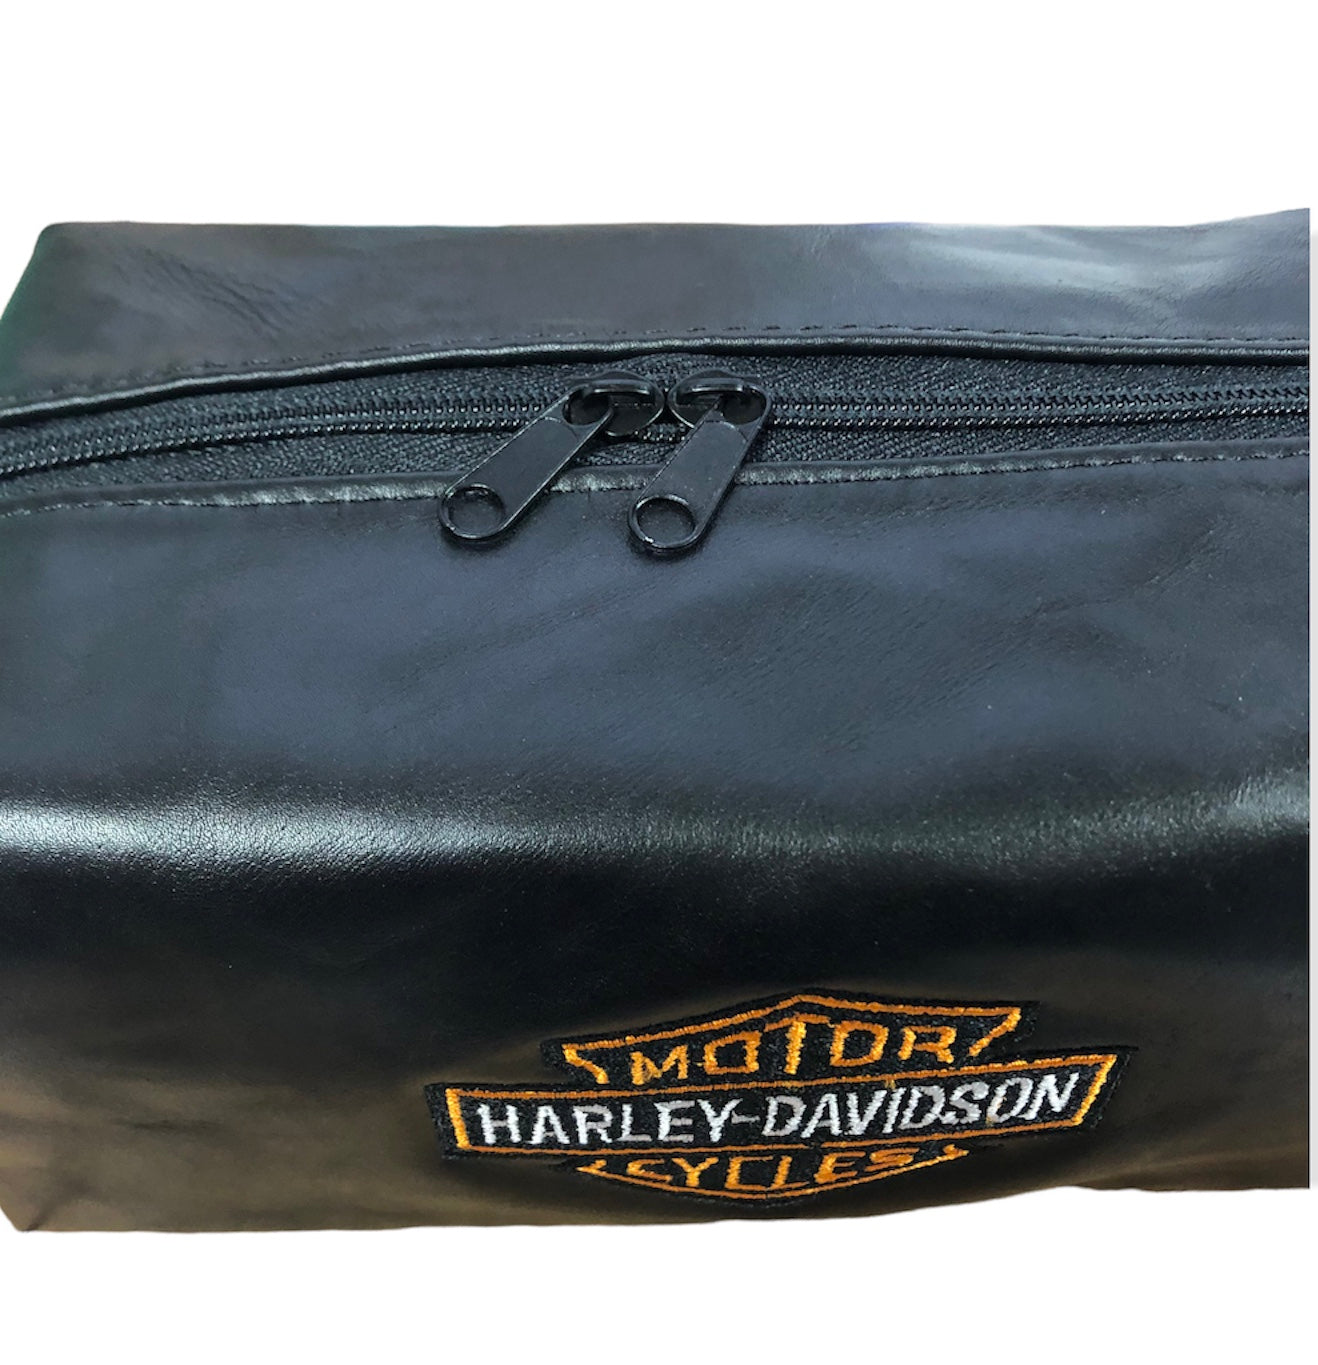 Garret Dopp Kit Bag- Custom Order